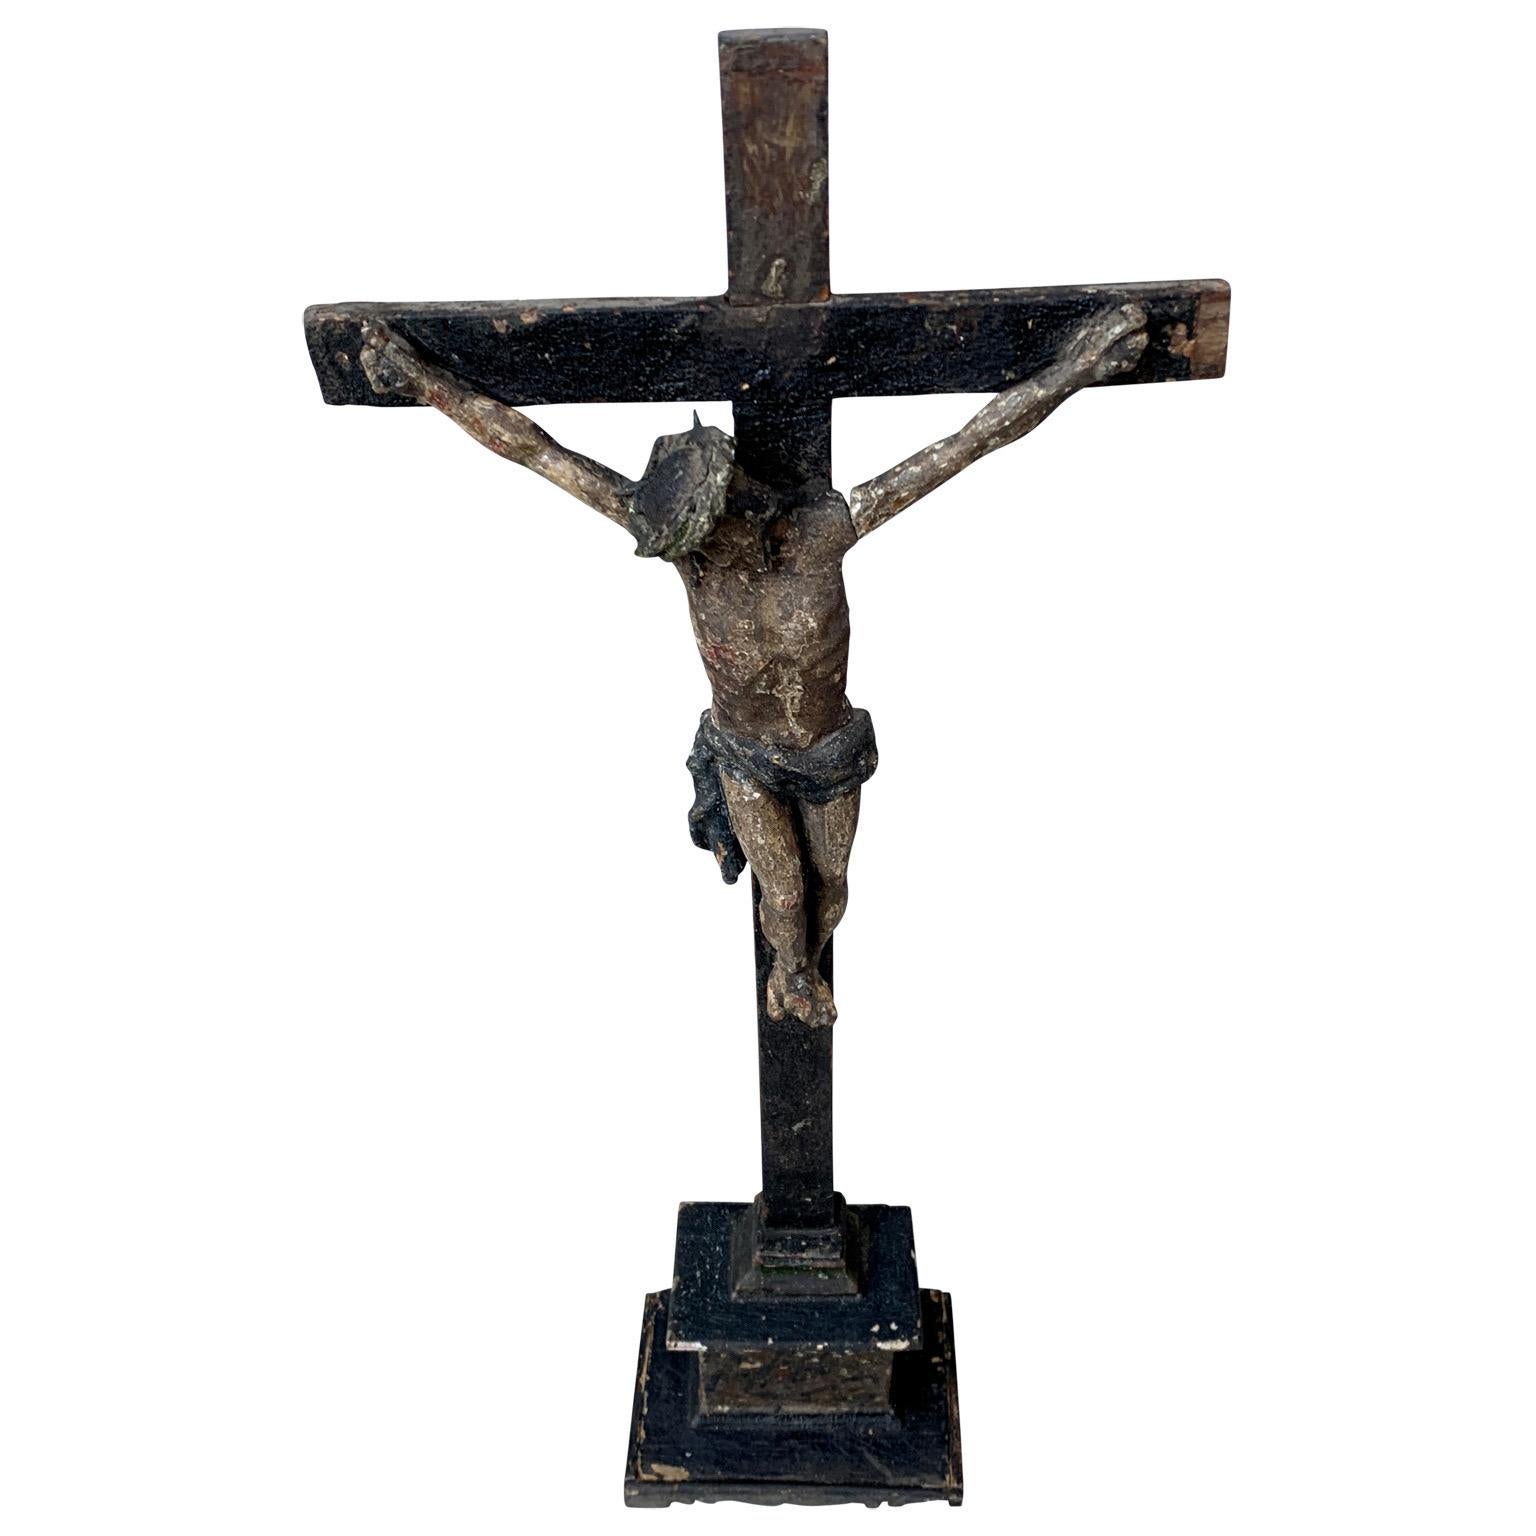 Un crucifix de table ancien du début du 18e siècle, sculpté et peint à la main, provenant de France, et dont la patine d'origine a été préservée.
Ce crucifix pourrait remonter au milieu ou à la fin du XVIIe siècle. Le crucifix porte sur ses surfaces